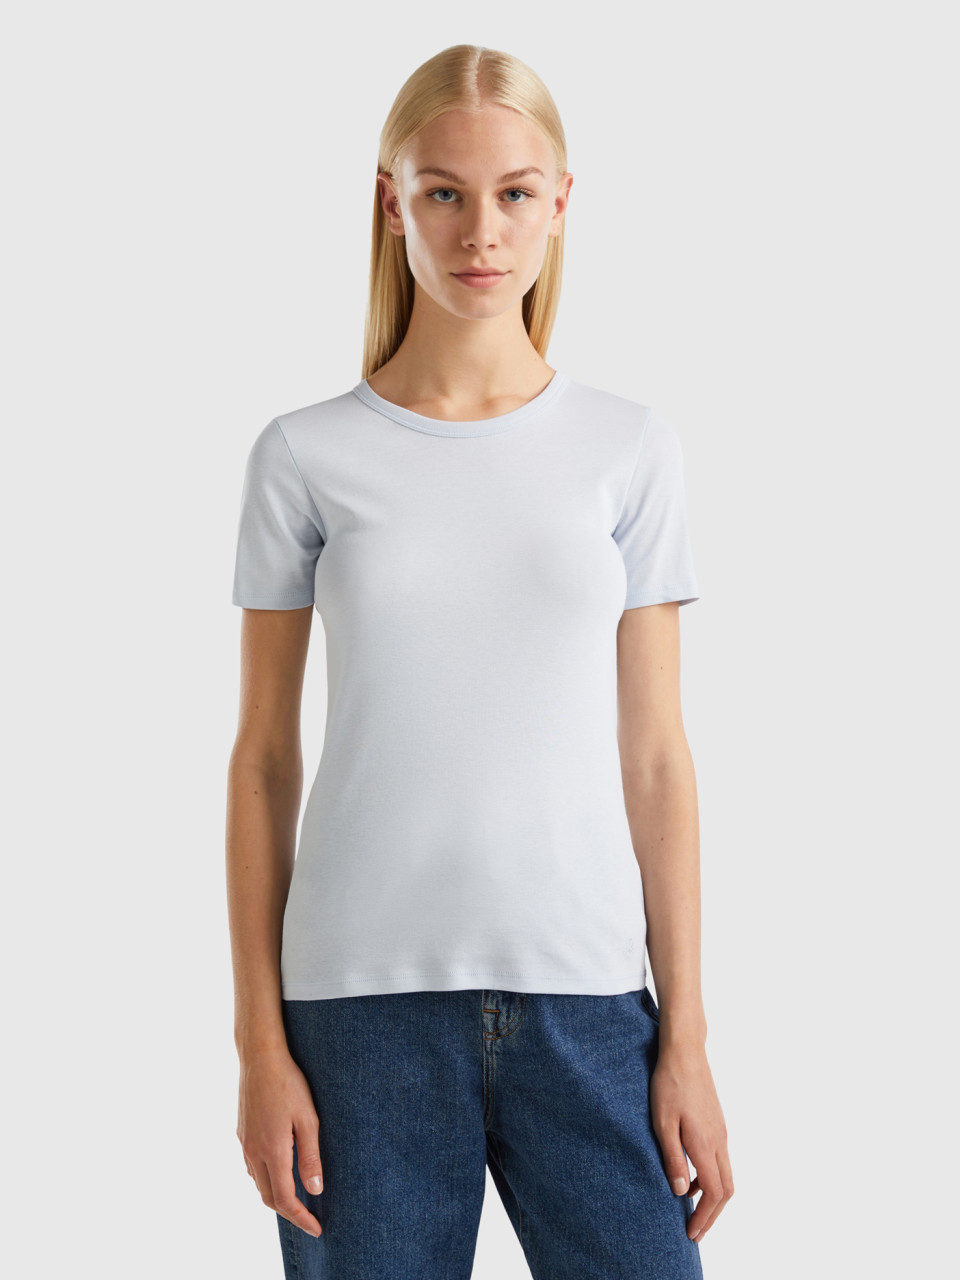 Benetton, Long Fiber Cotton T-shirt, Sky Blue, Women